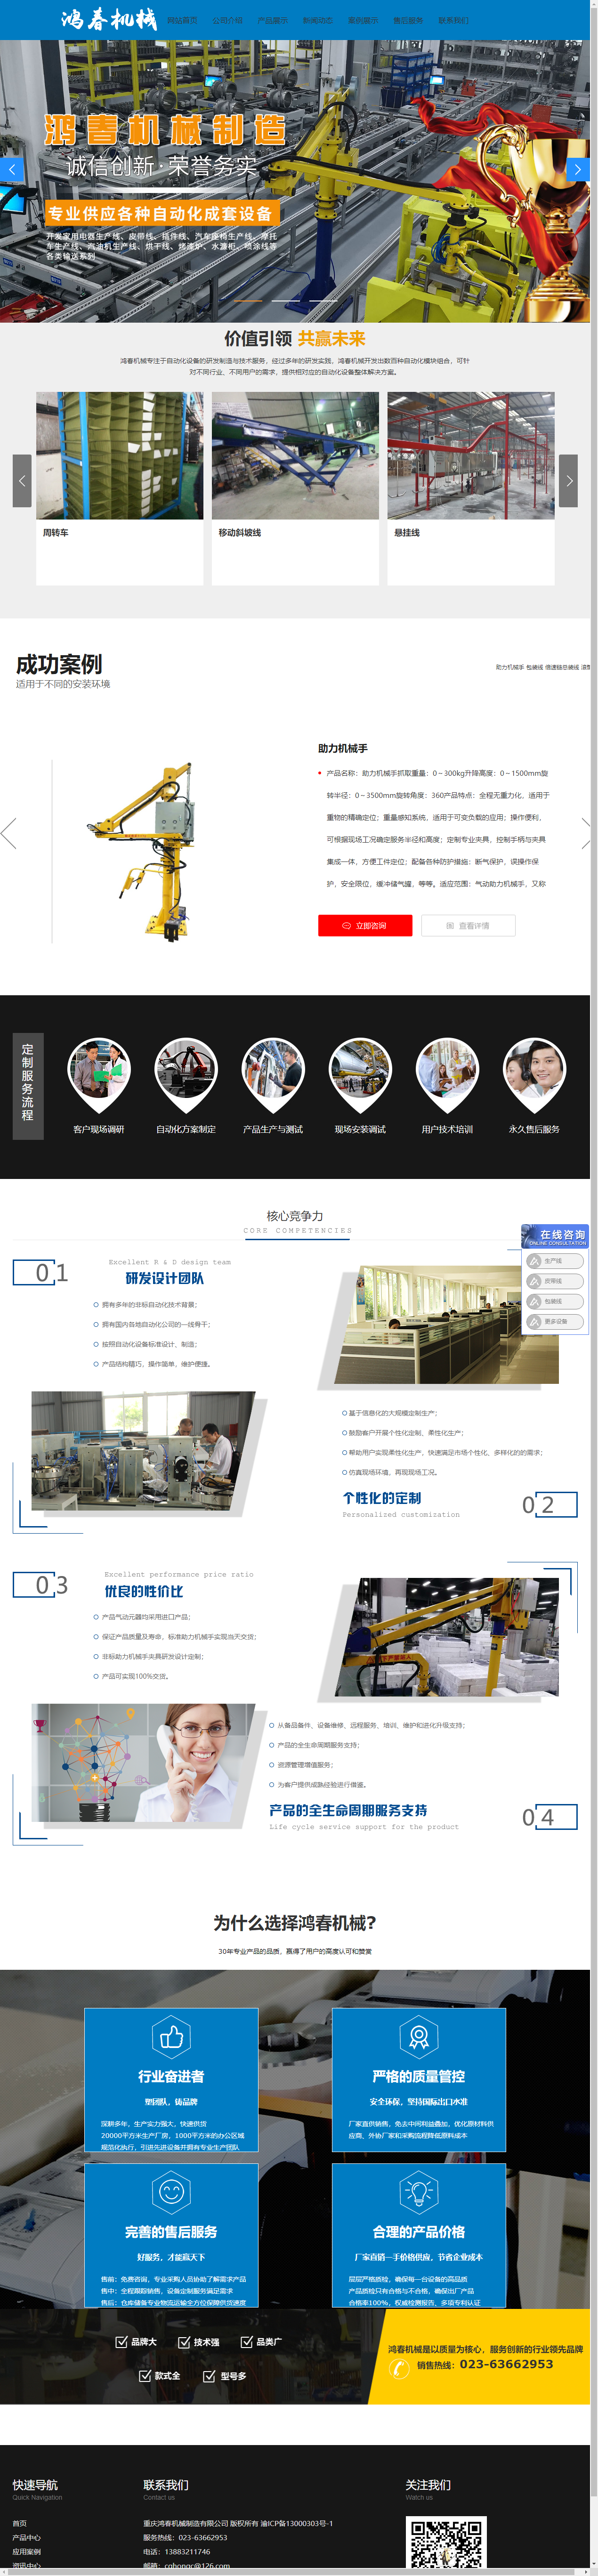 重庆鸿春机械制造有限公司网站案例